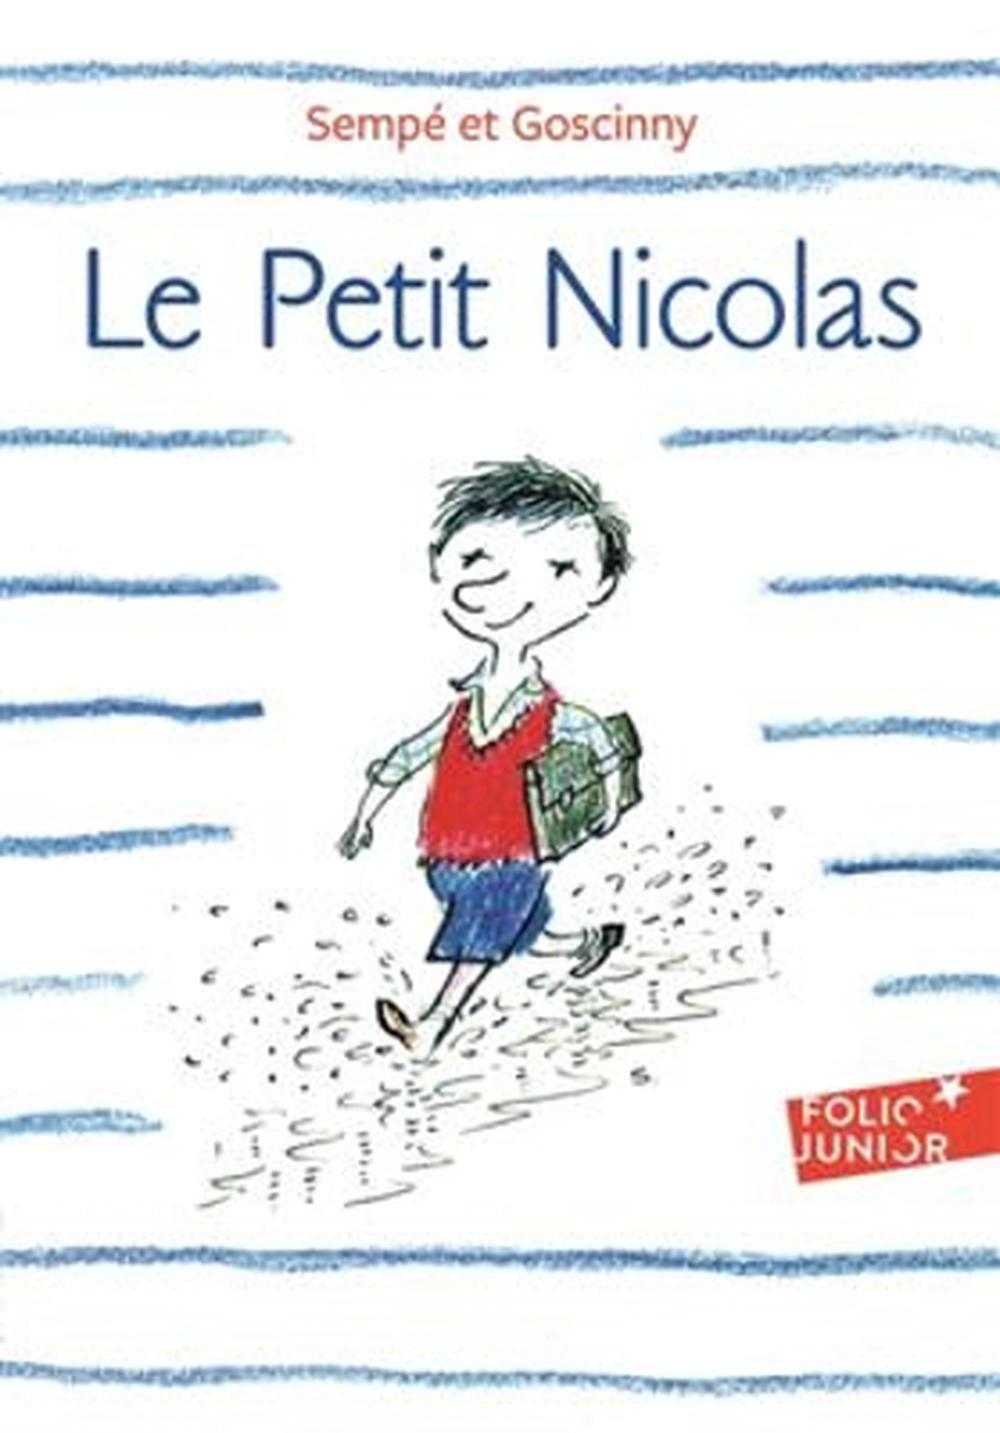 Le Petit Nicolas by René Goscinny